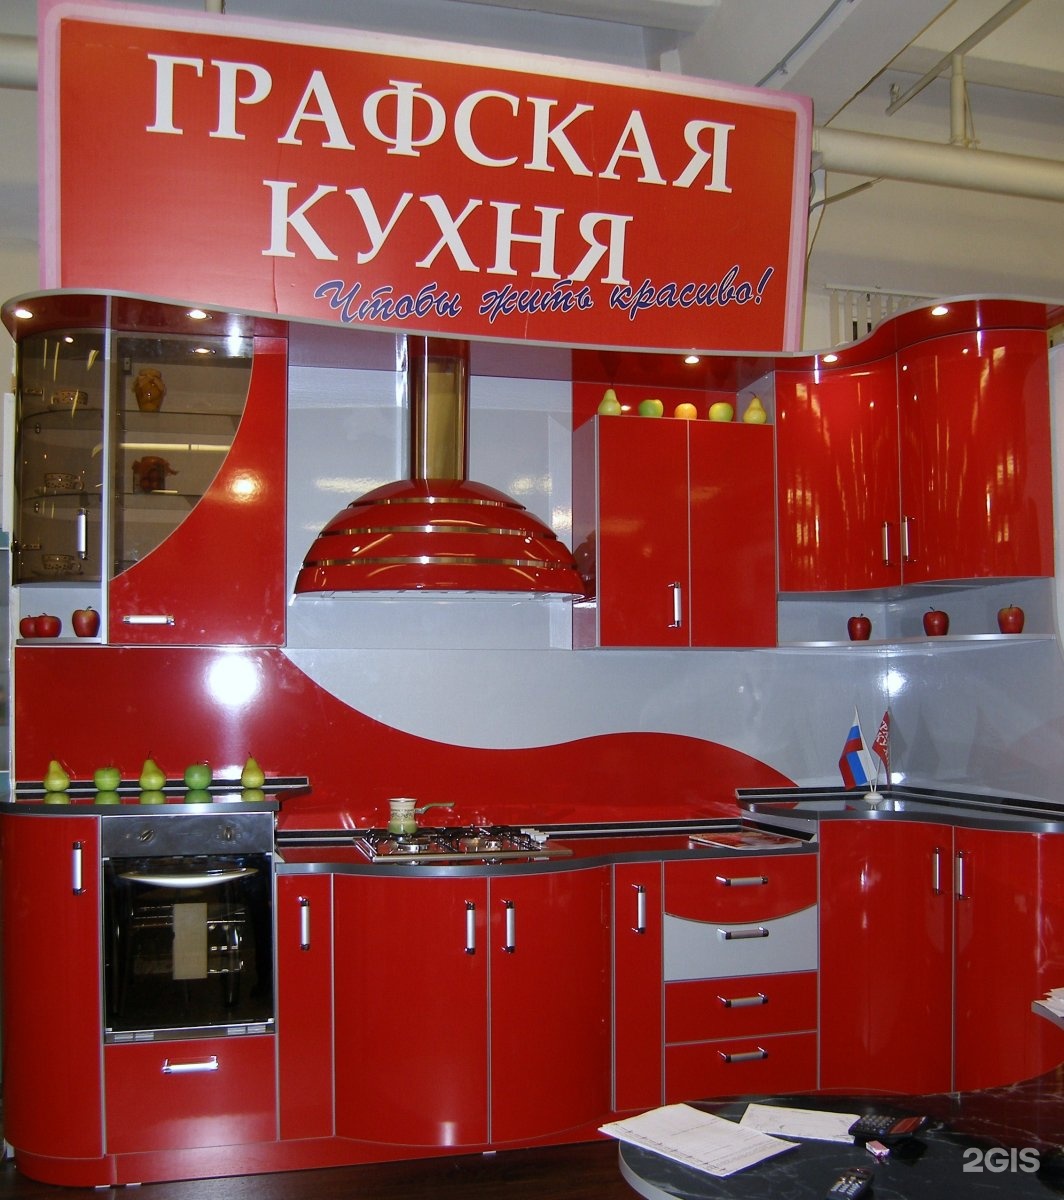 Московские производители кухонь. Графская кухня. Мебель для кухни. Магазин кухонь. Мебельный магазин кухни.